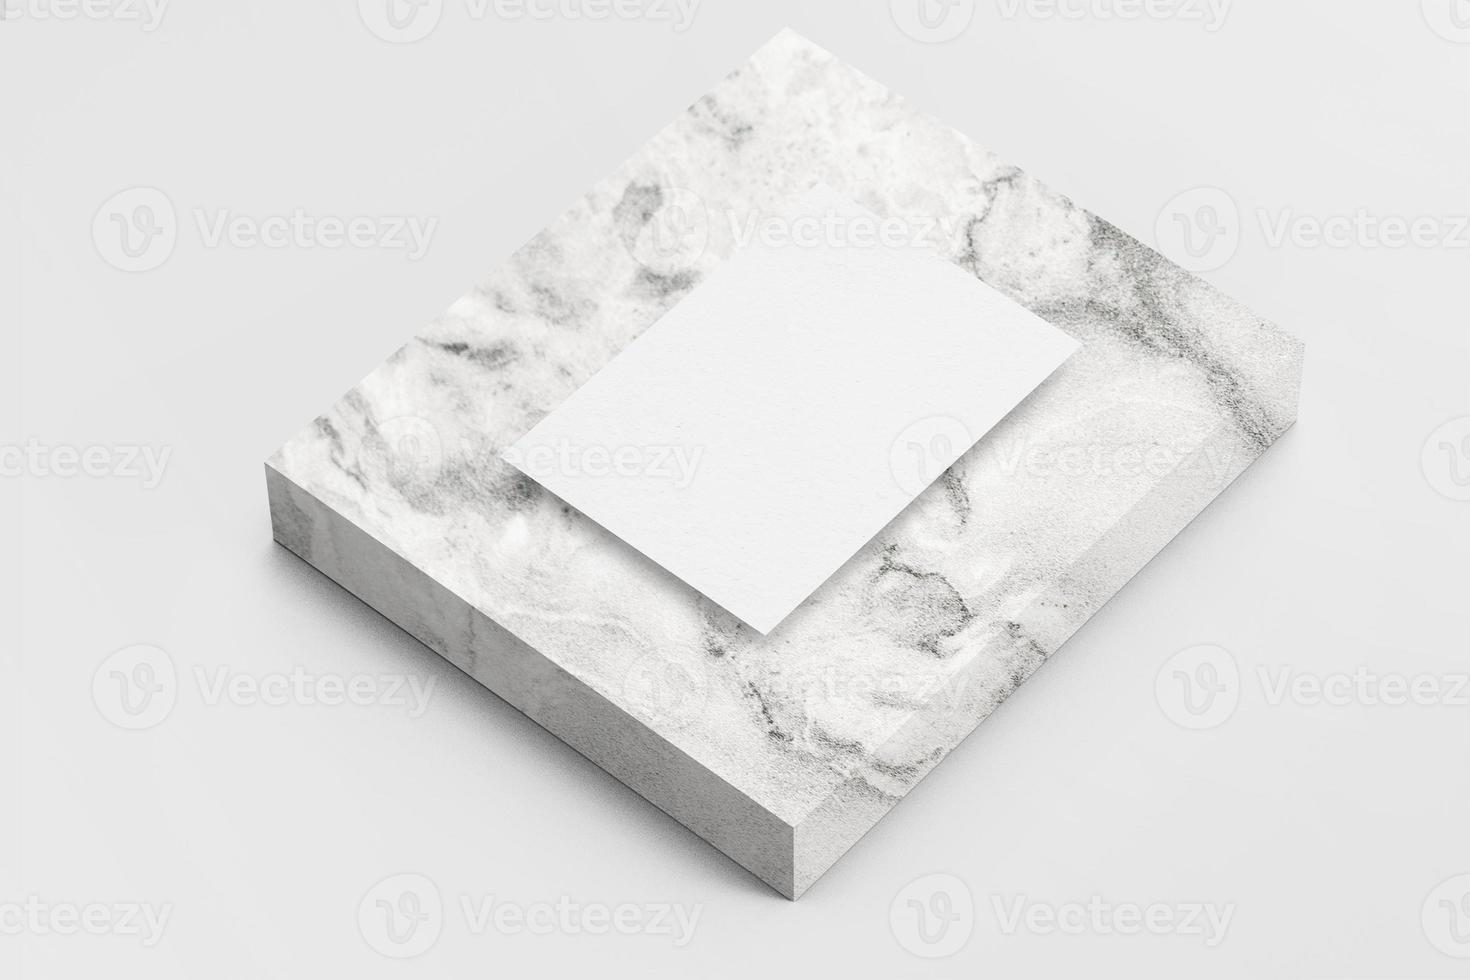 weißes a4-papierbriefmodell auf marmorstein klassisch elegant foto